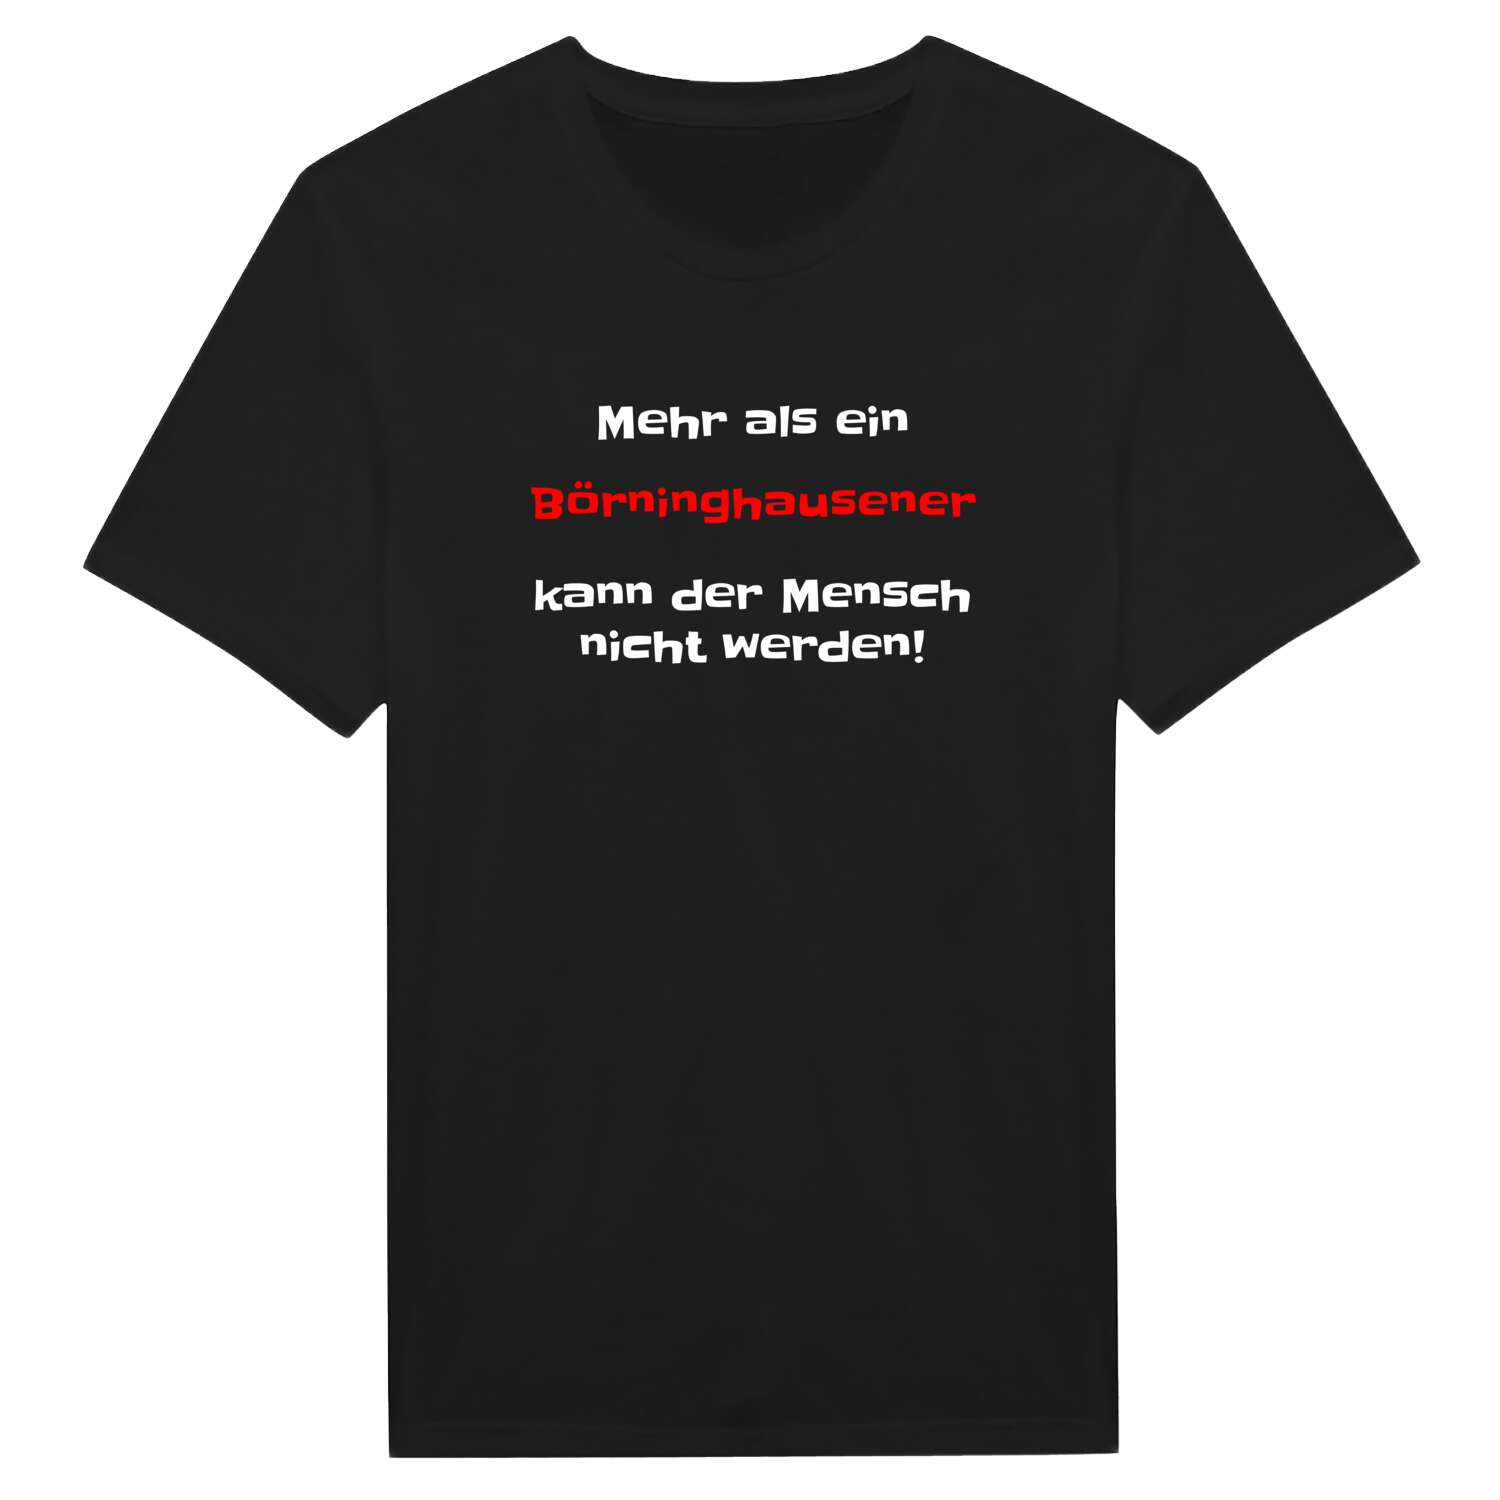 Börninghausen T-Shirt »Mehr als ein«